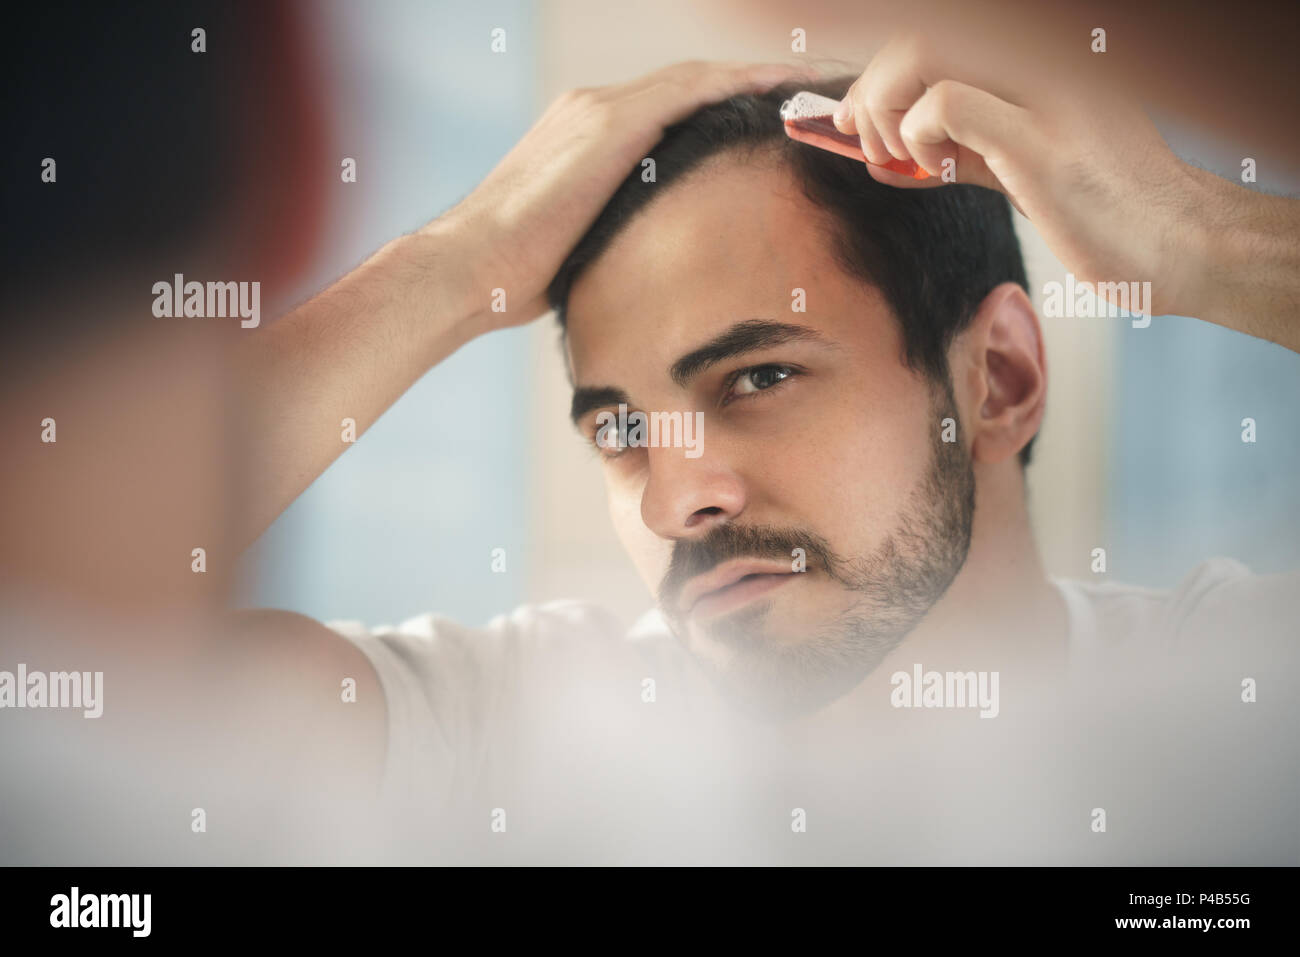 Weiß metrosexuellen Mann für Alopezie besorgt, die Lotion für die Haare wachsen. Junge Person zurücktretenhaarstrich auf Spiegel Stockfoto